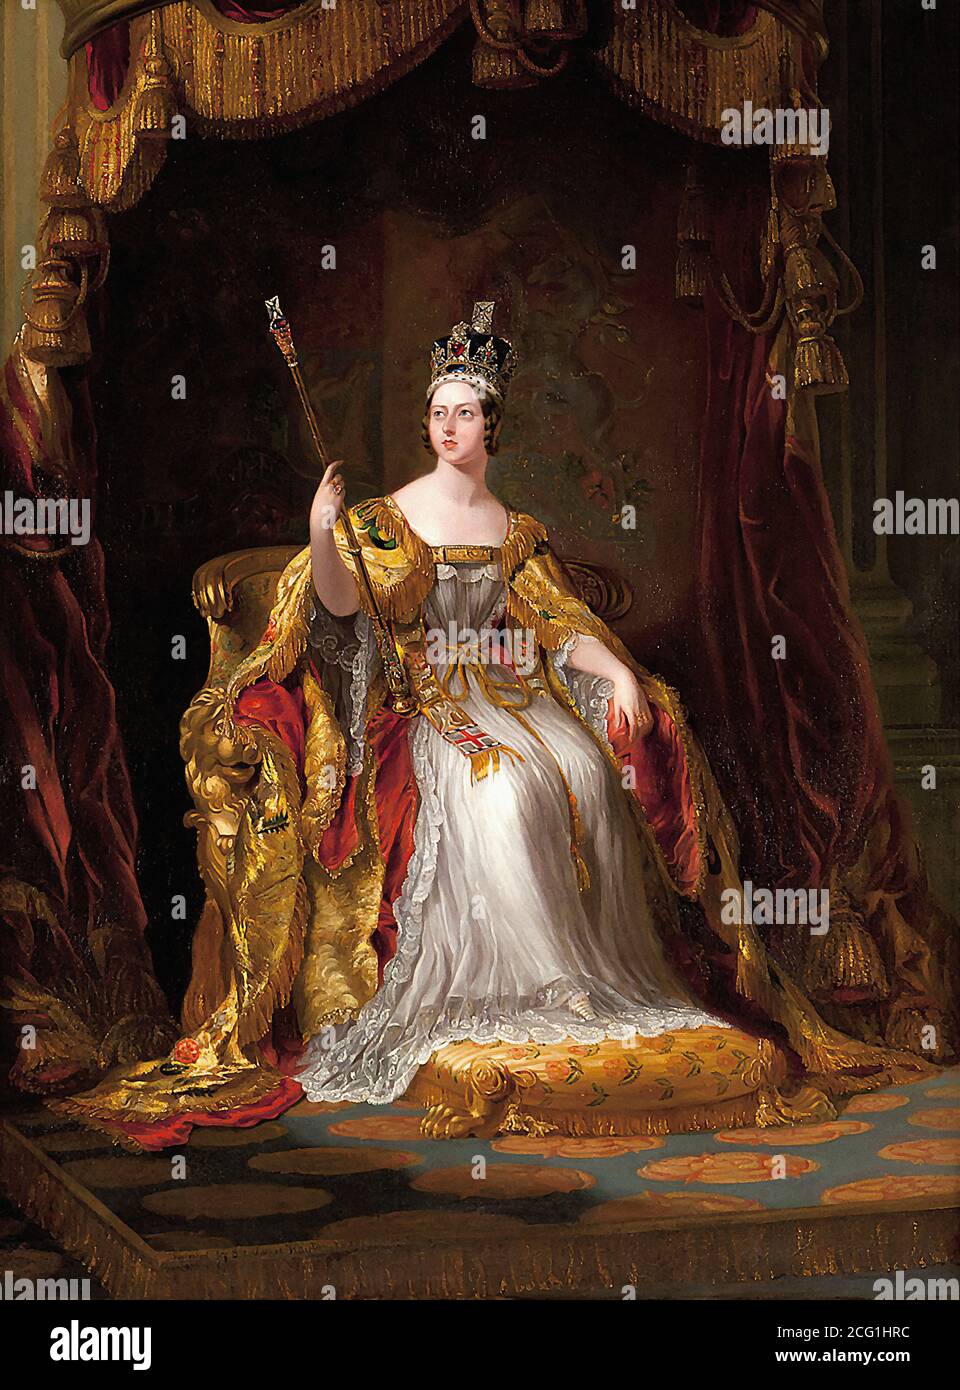 Hayter George - Queen Victoria en robes de Coronation - Britannique École - 19e siècle Banque D'Images